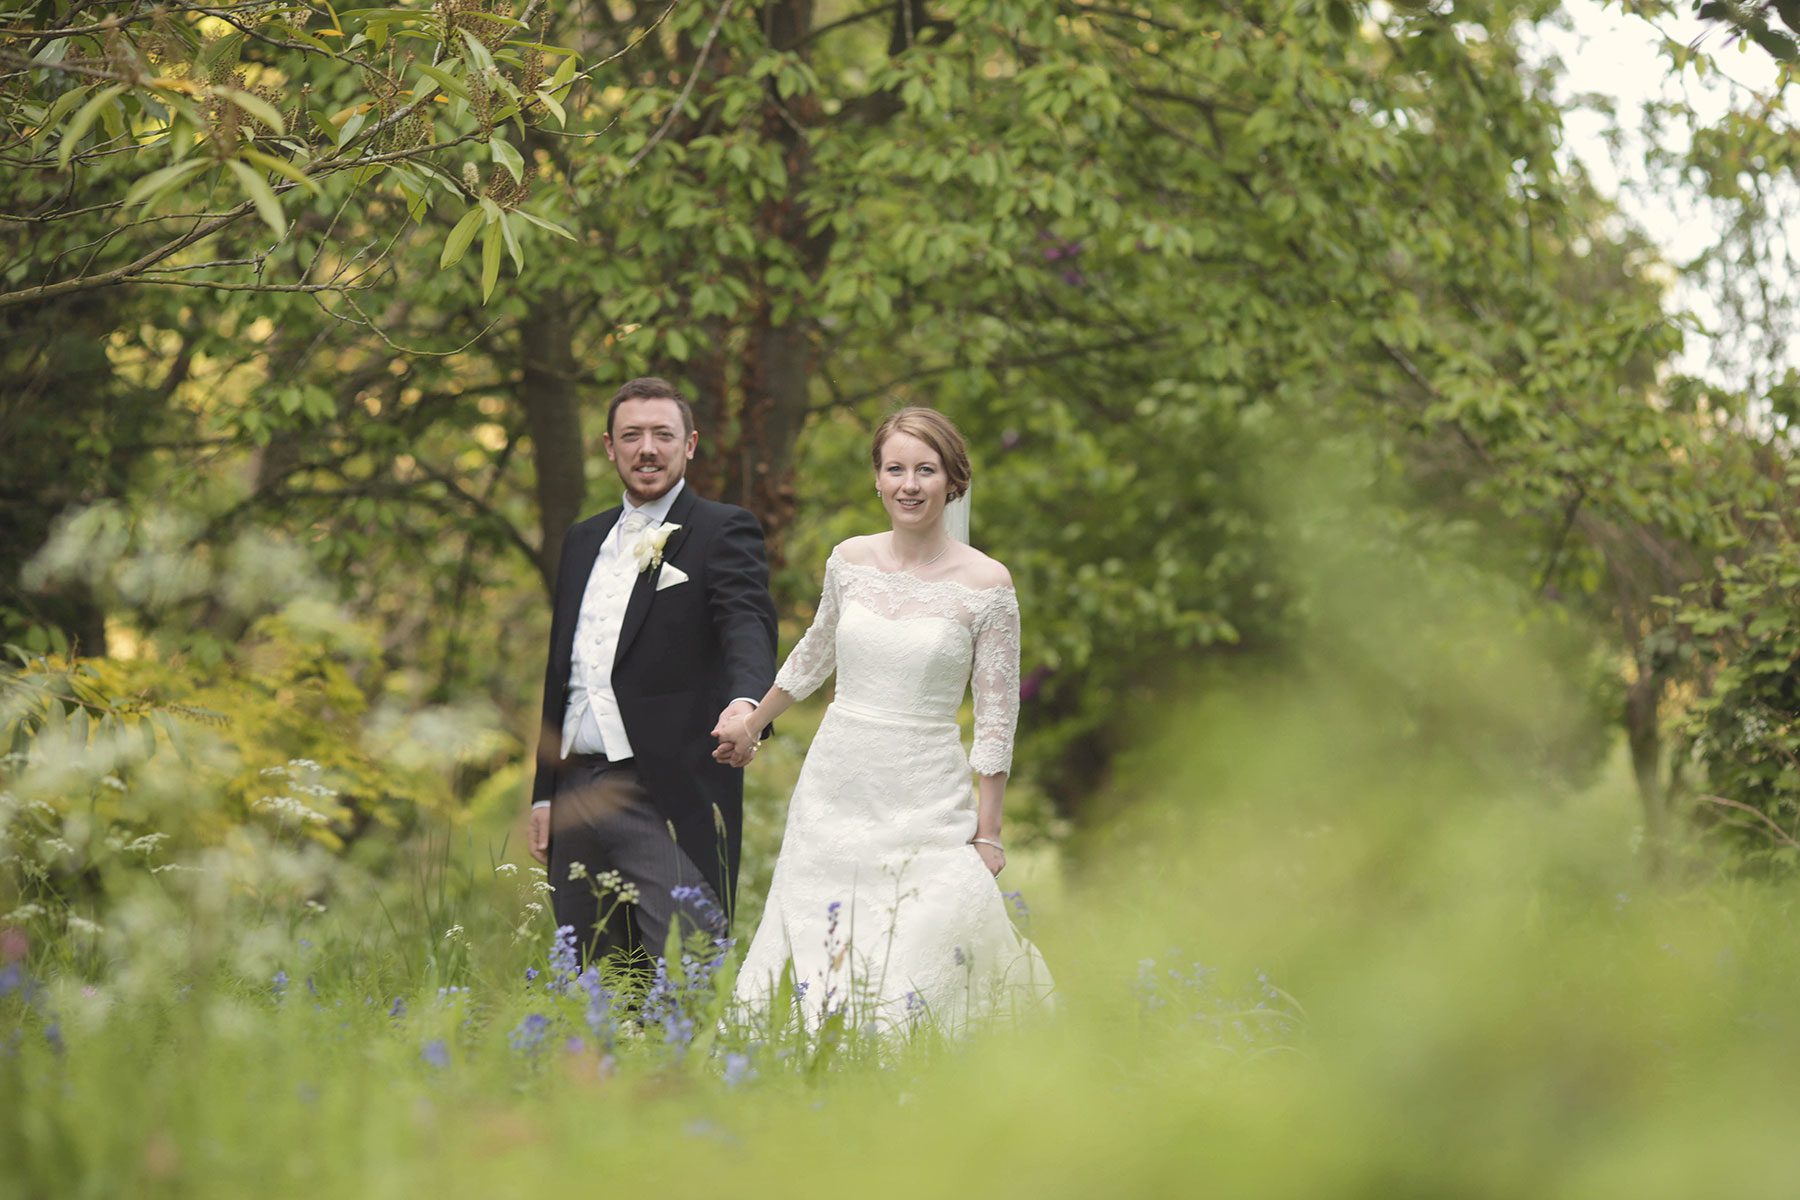 Wild photos - Wedding Photographer at Dumbleton Hall | Bullit - Cheltenham & Cotswolds